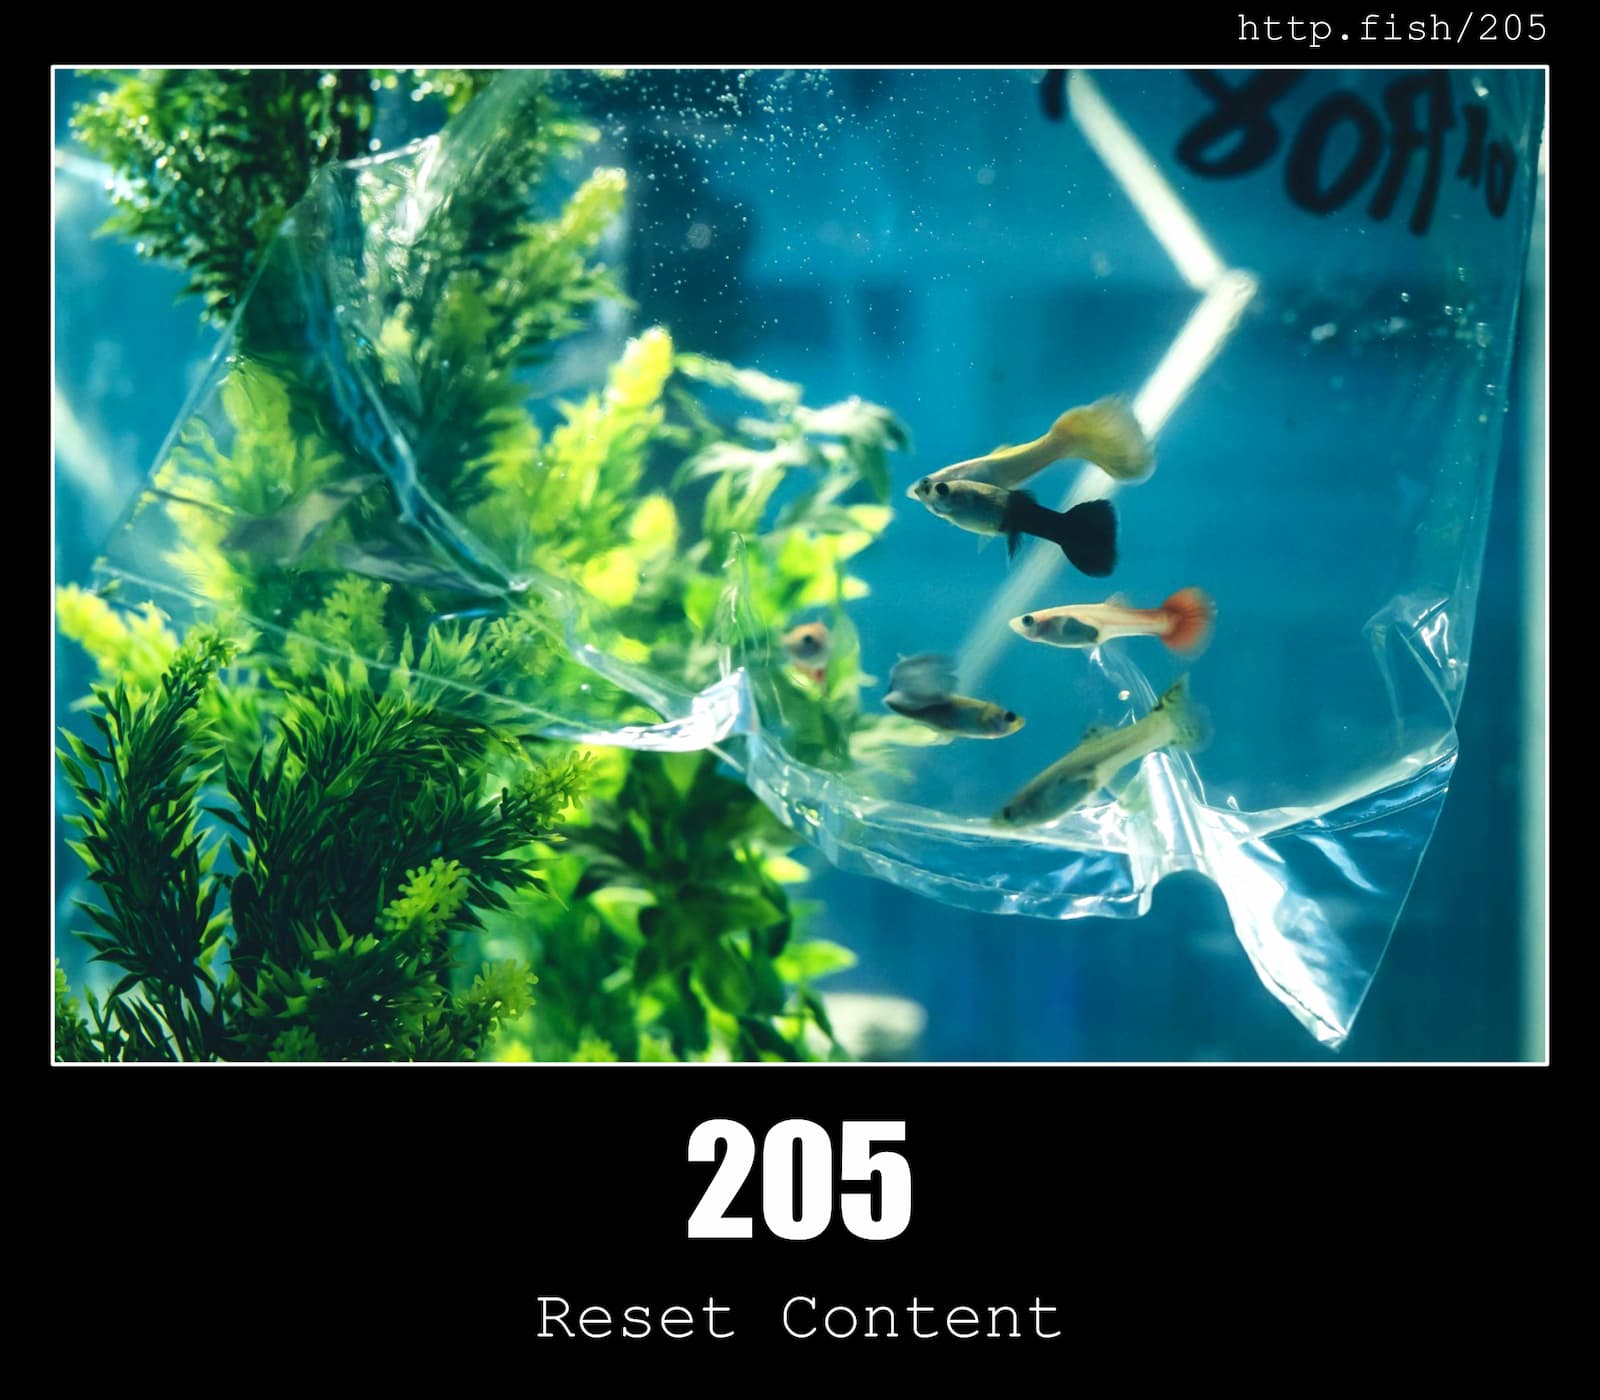 HTTP Status Code 205 Reset Content & Fish